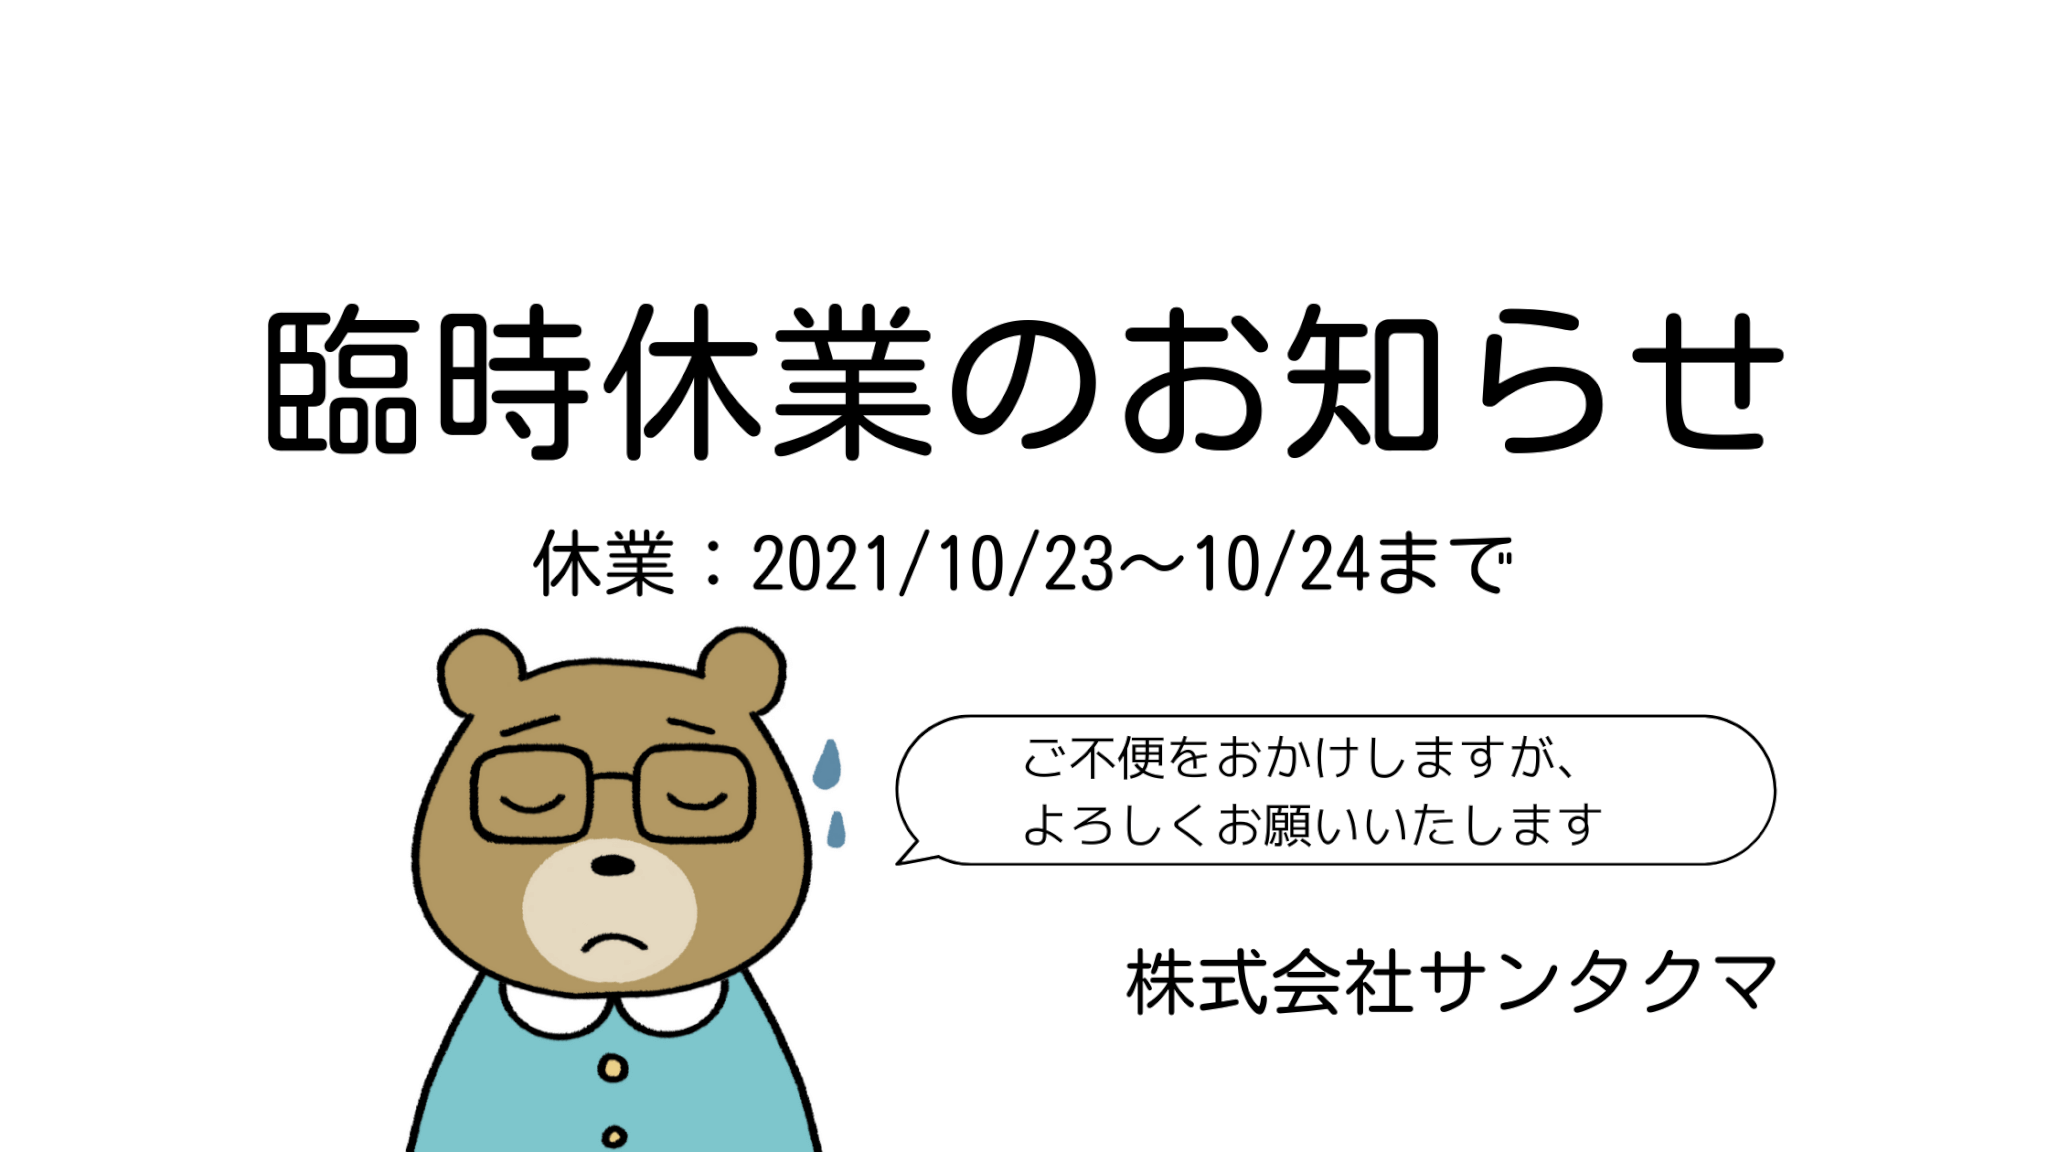 臨時休業のお知らせ2021/10/23～24